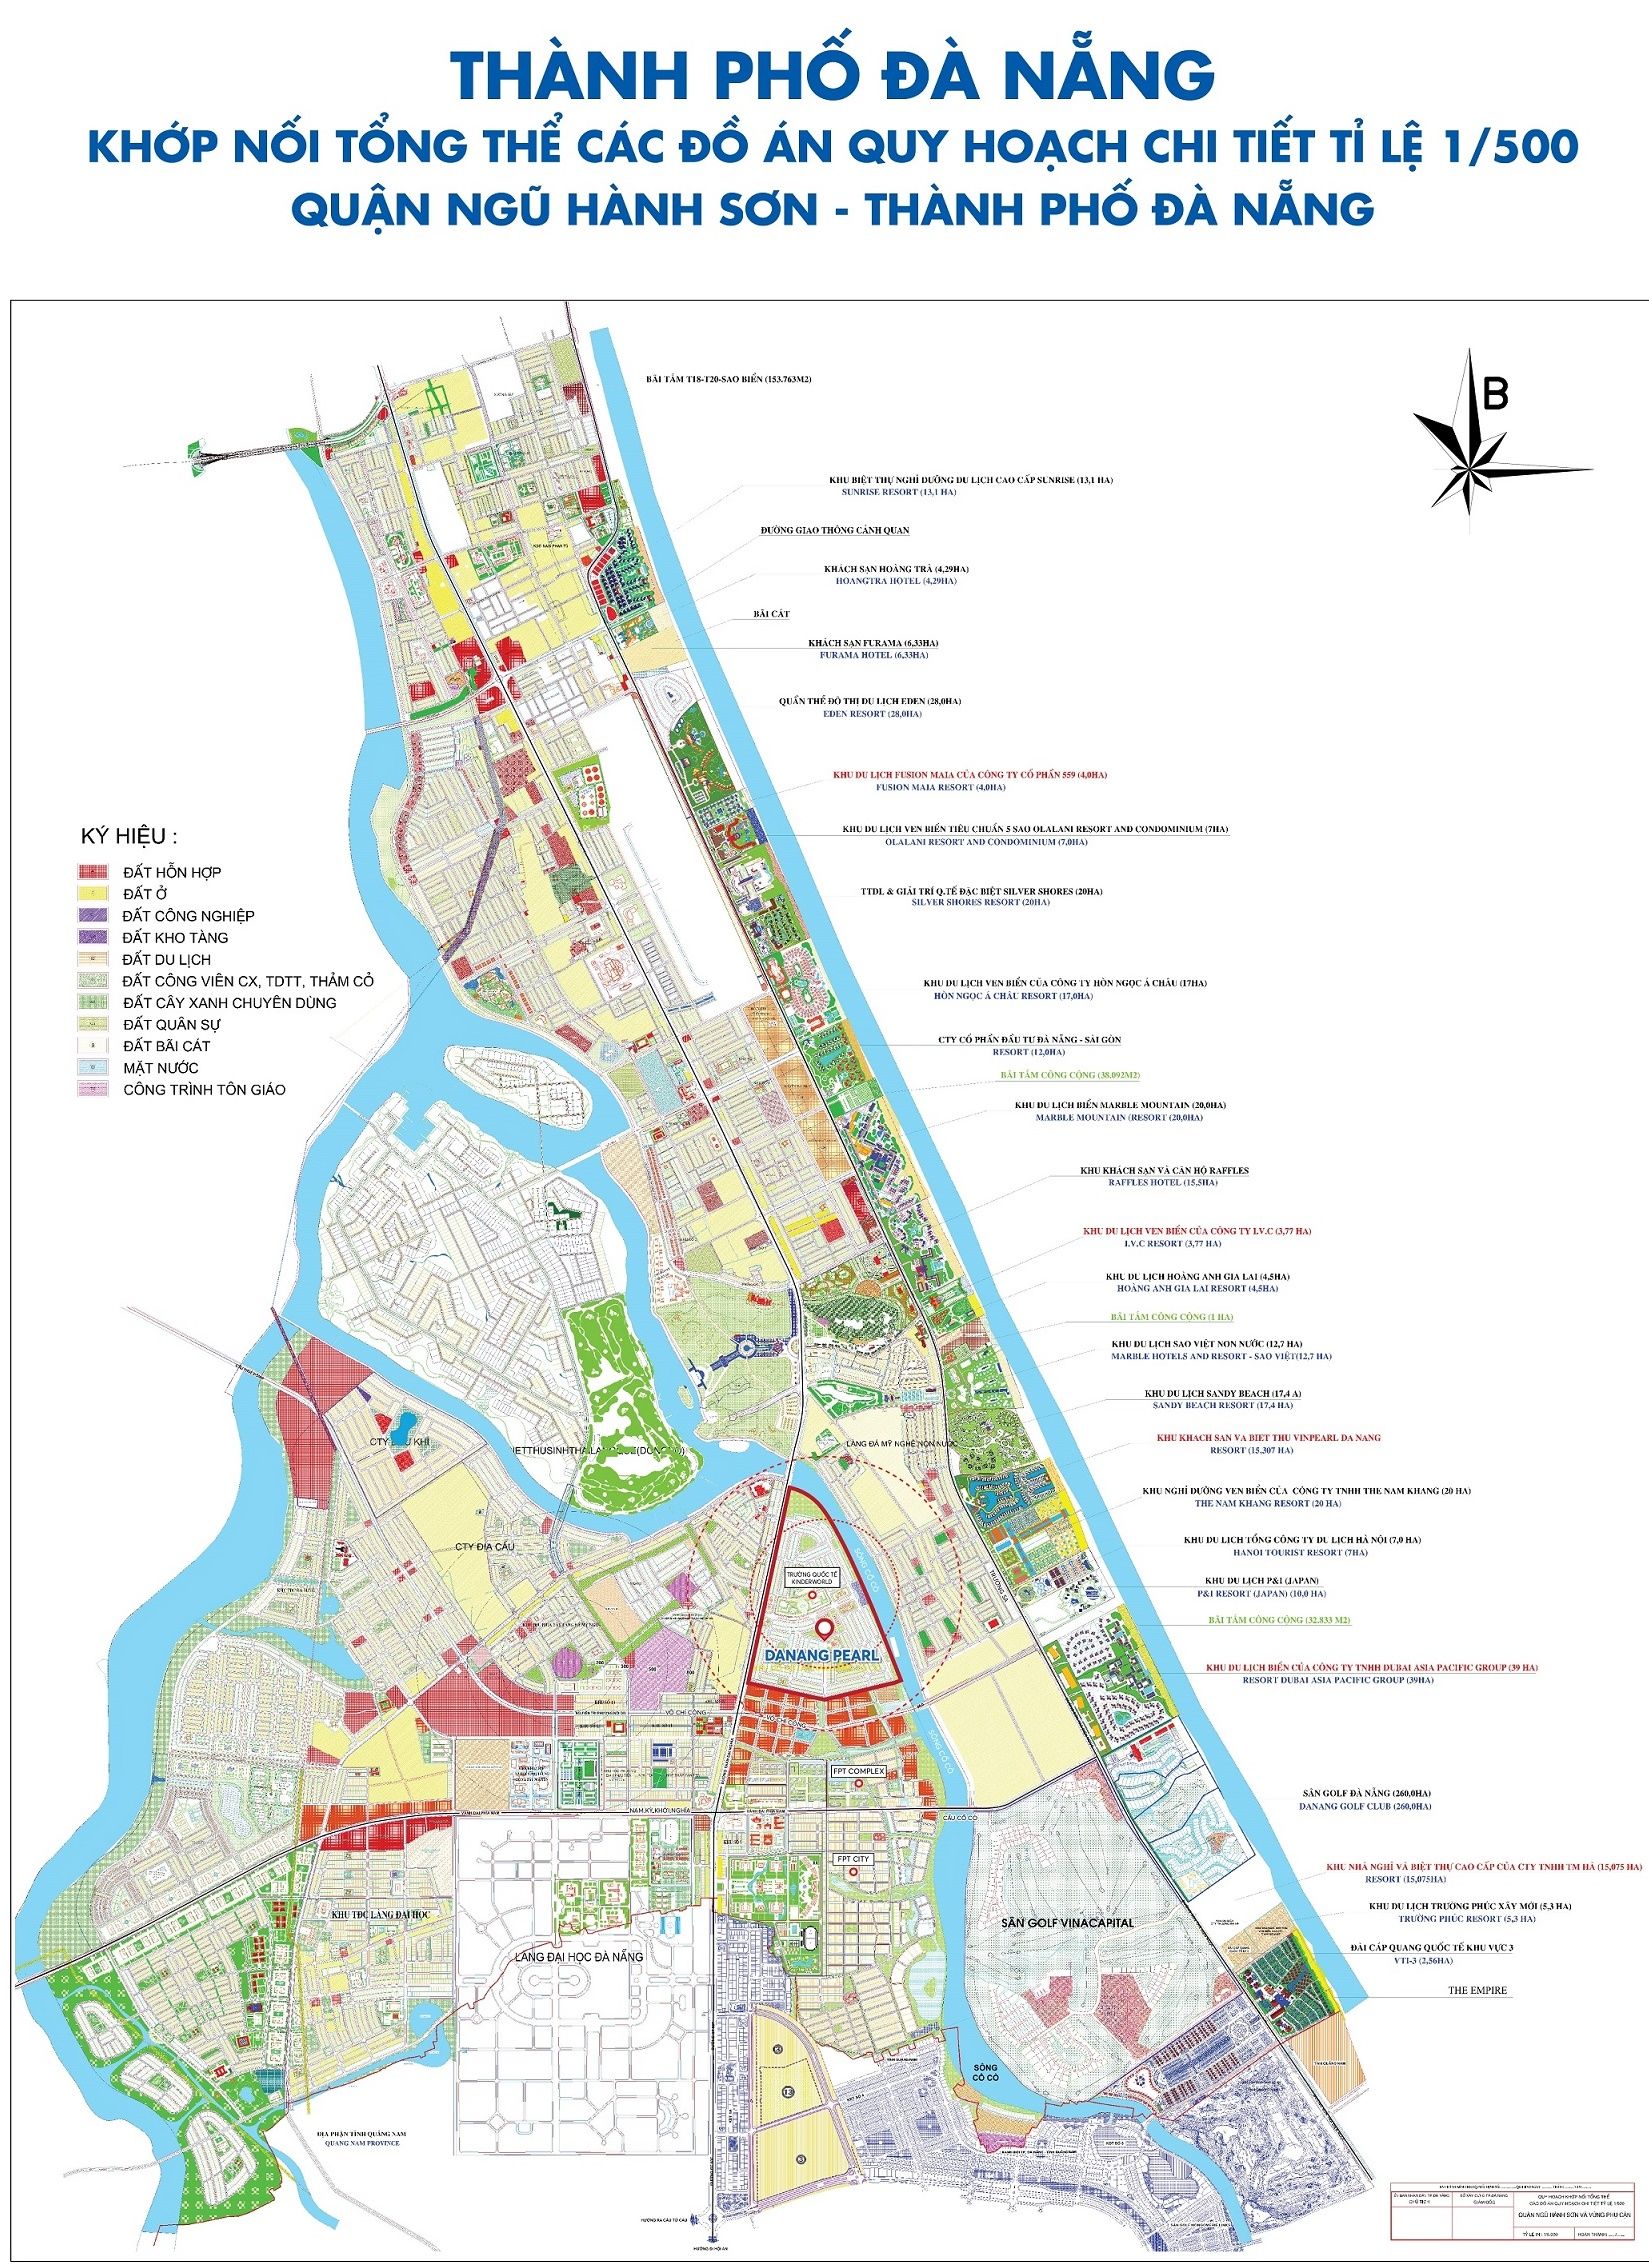 Quy hoạch Đà Nẵng 2024: Đà Nẵng sẽ trở thành một thành phố hiện đại, độc đáo với nhiều dự án quan trọng được triển khai trong khu vực. Đó là cơ hội tuyệt vời để khám phá thành phố và cảm nhận các trải nghiệm đẳng cấp quốc tế. Những ấn tượng thú vị chắc chắn sẽ khiến bạn thích thú khi tham quan Đà Nẵng.